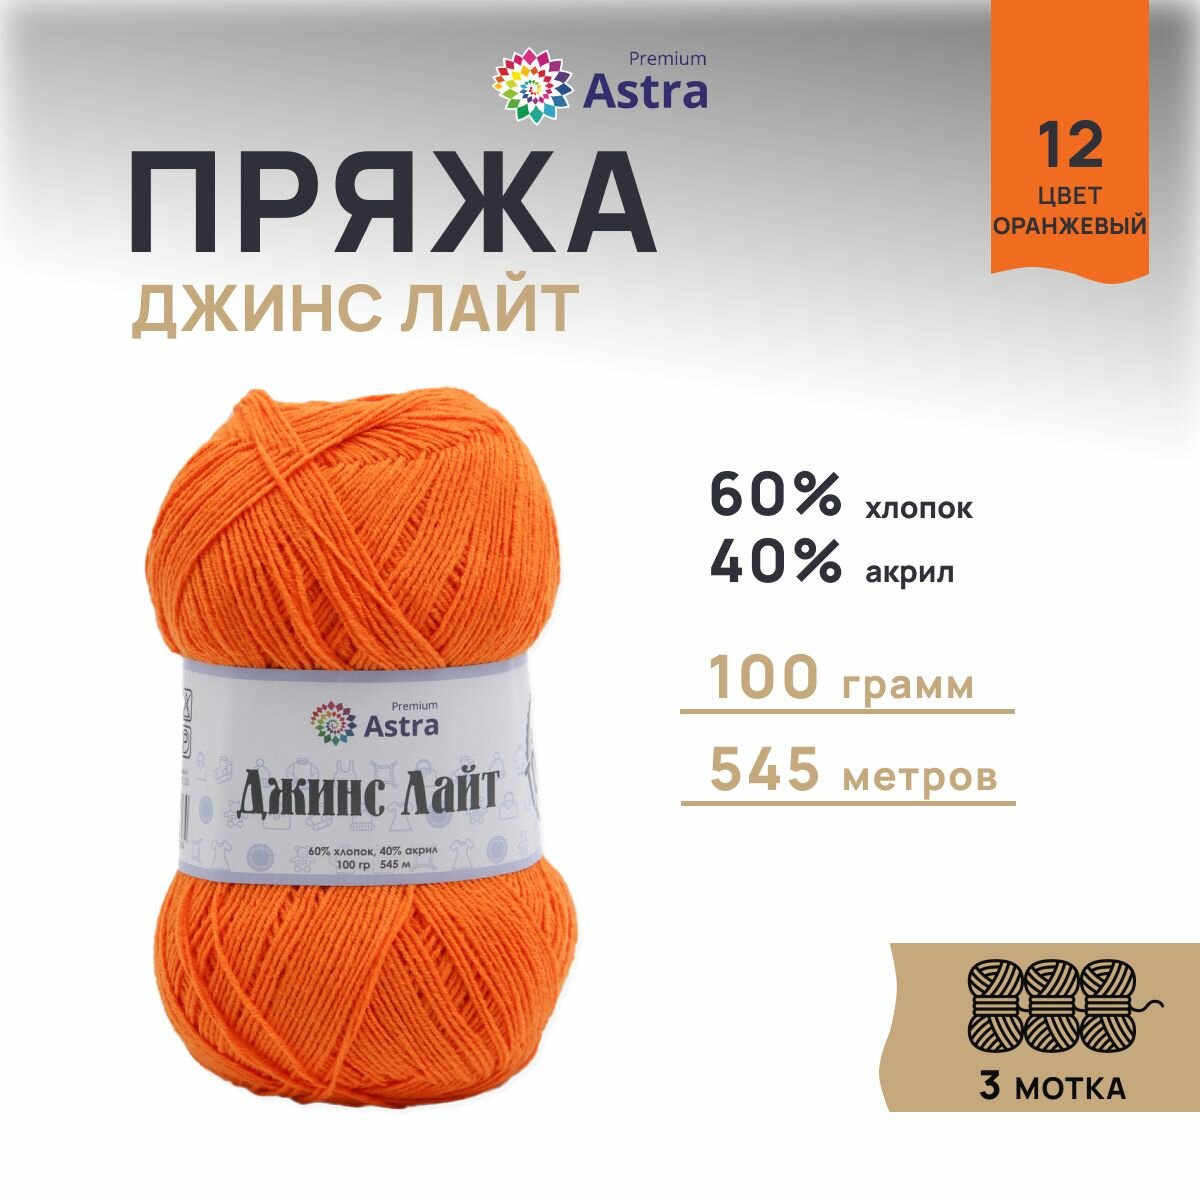 Пряжа для вязания Astra Premium 'Джинс Лайт' (Jeans Light), 100г, 545м (60% хлопок, 40% акрил) (12 оранжевый), 3 мотка